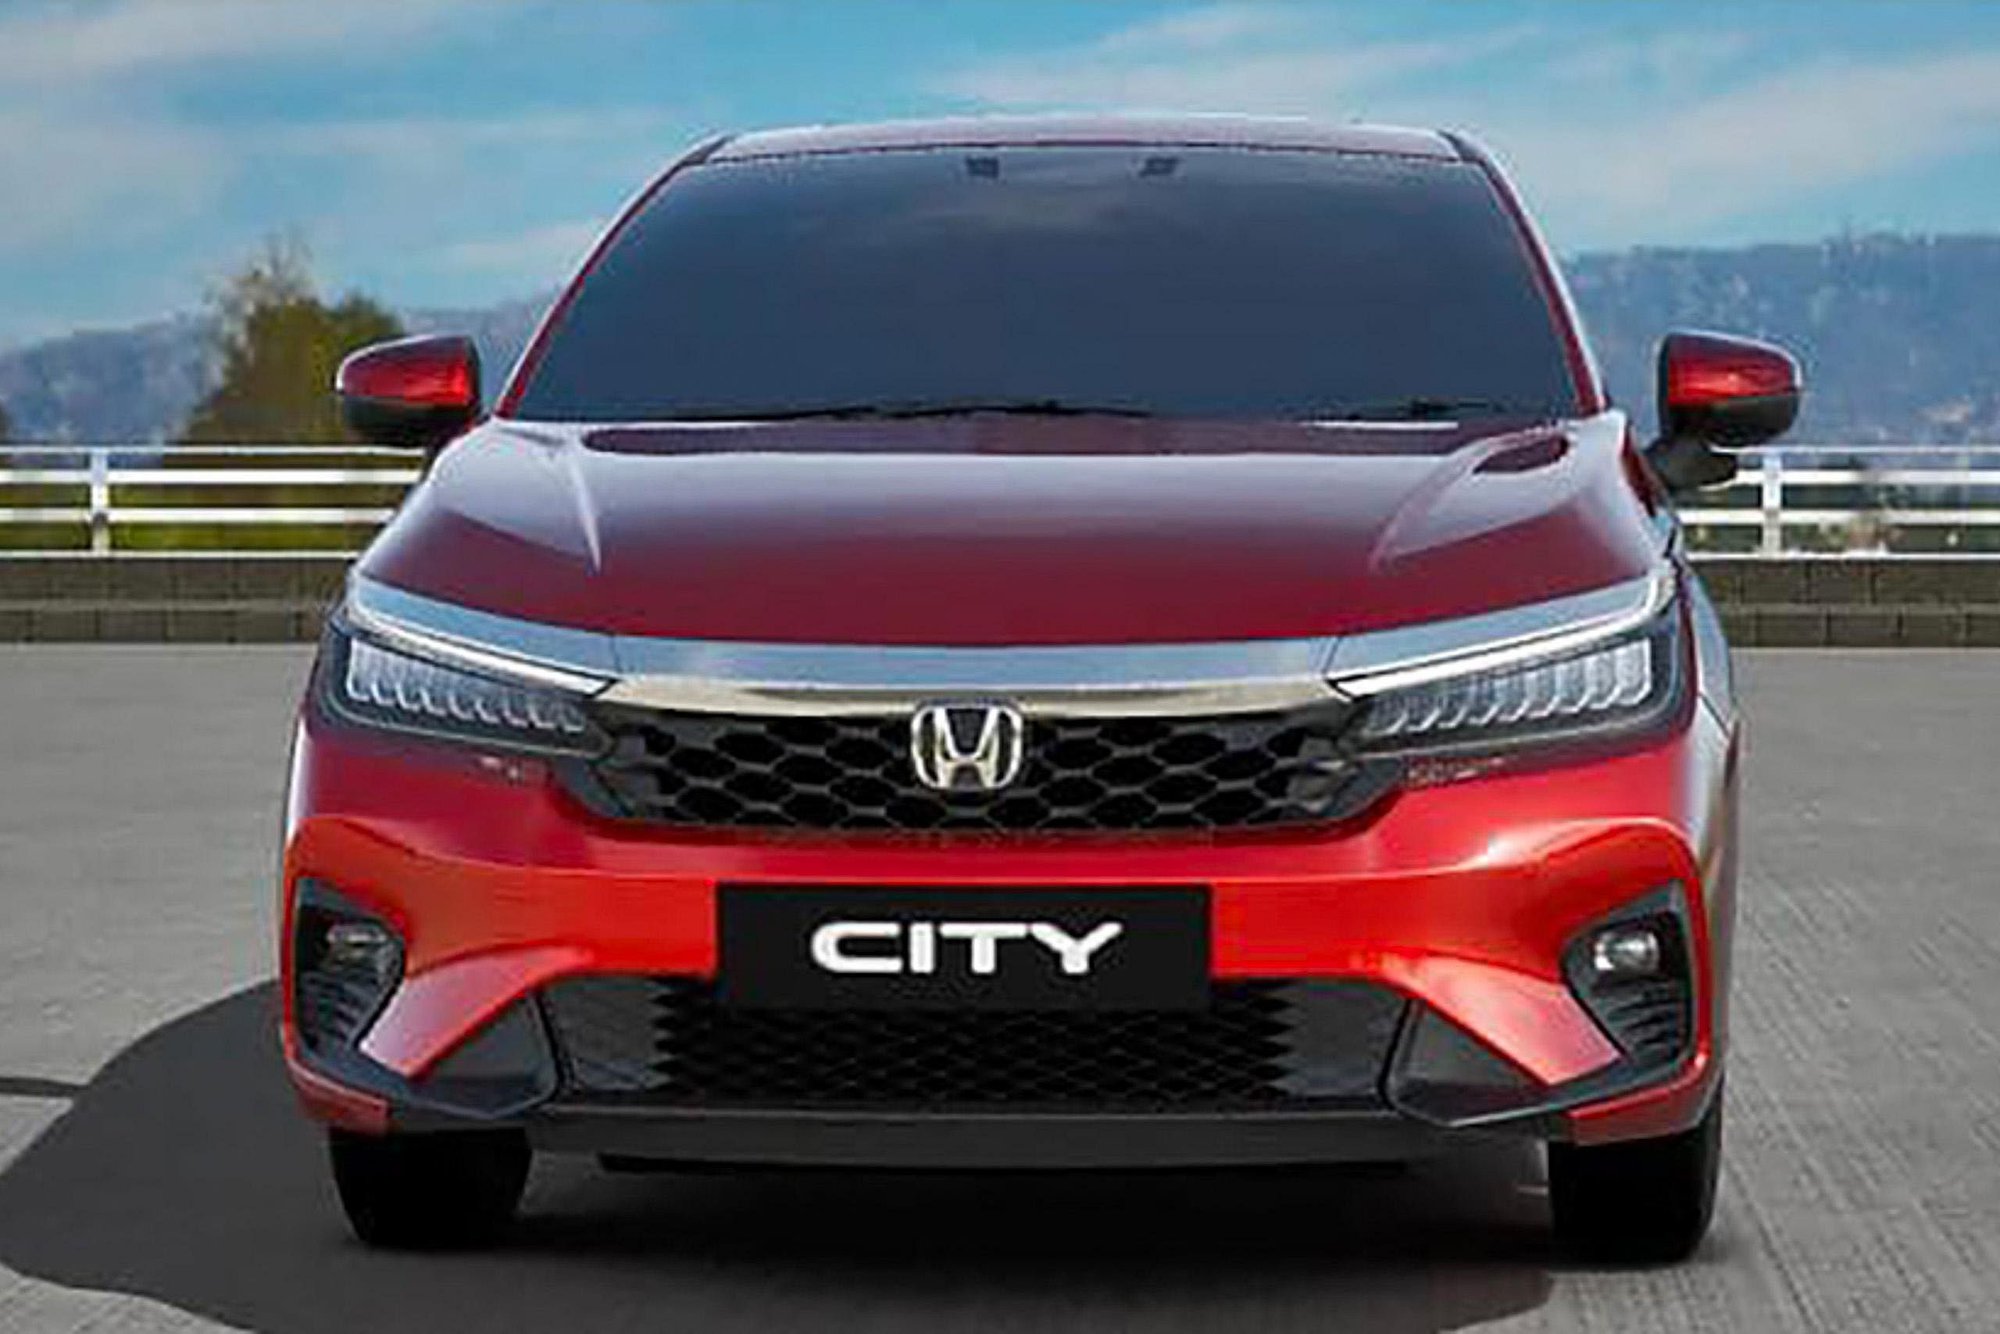 Bán xe Honda City RS 2021 nhập khẩu còn bảo hành chính hãng đến 2024  Đức  Thiện Auto